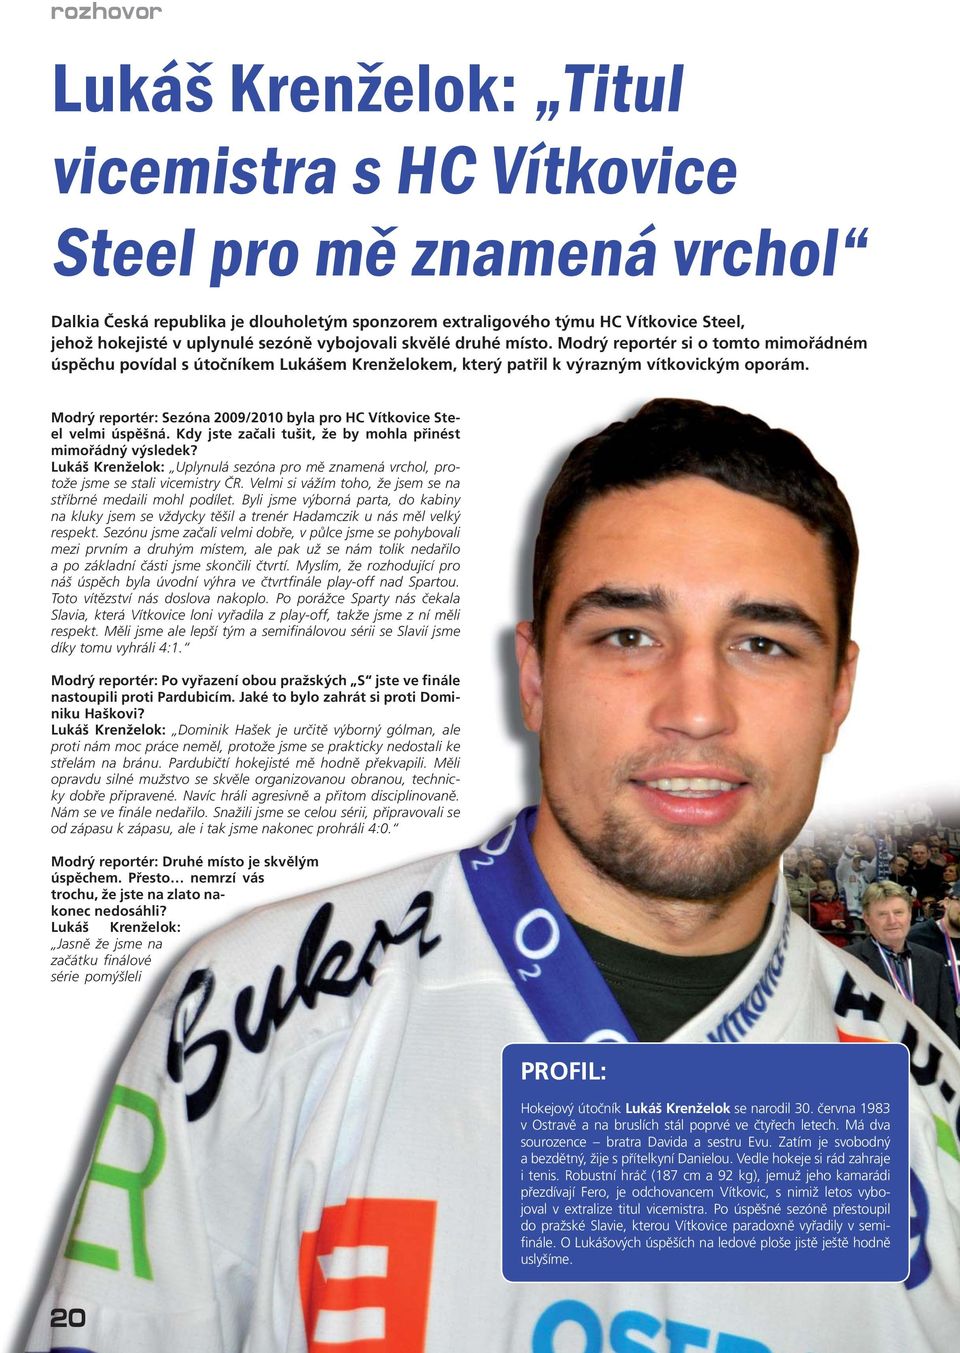 Modrý reportér: Sezóna 2009/2010 byla pro HC Vítkovice Steel velmi úspěšná. Kdy jste začali tušit, že by mohla přinést mimořádný výsledek?